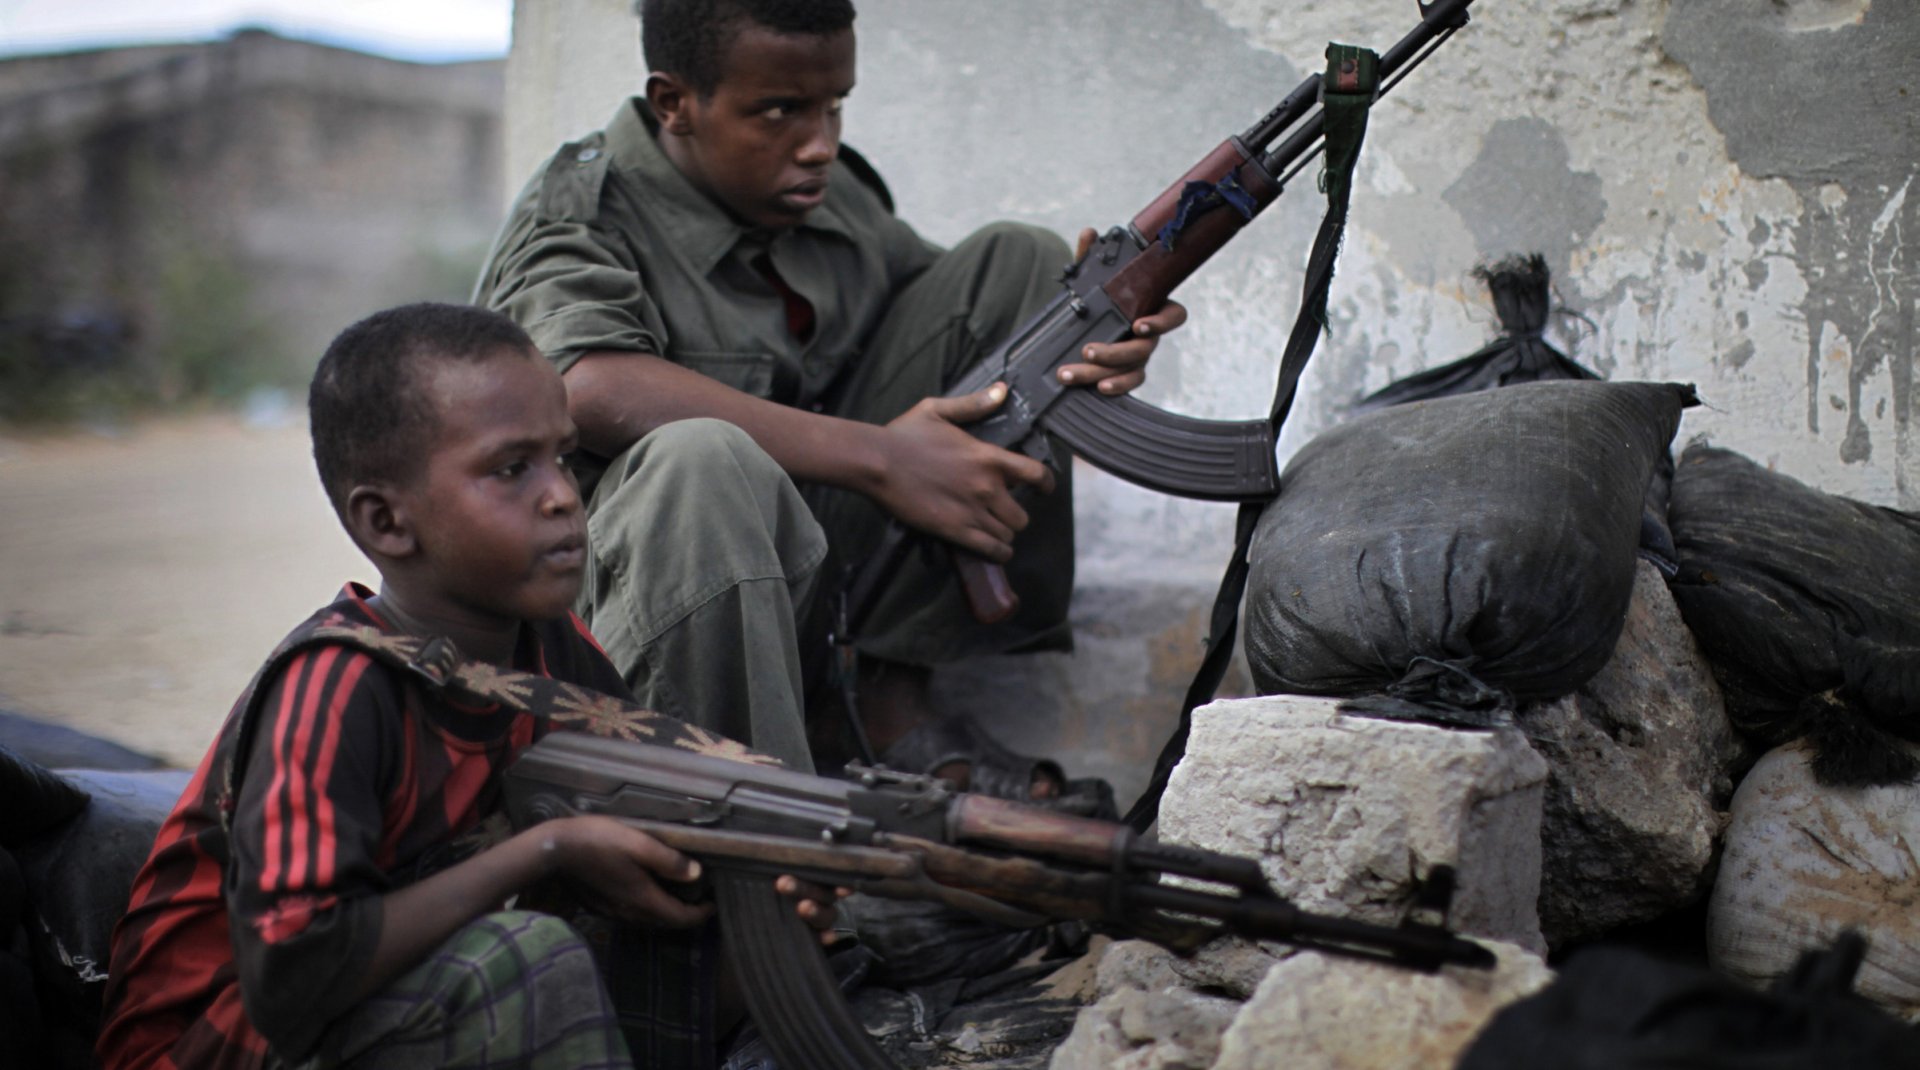 bimbi soldato somalia